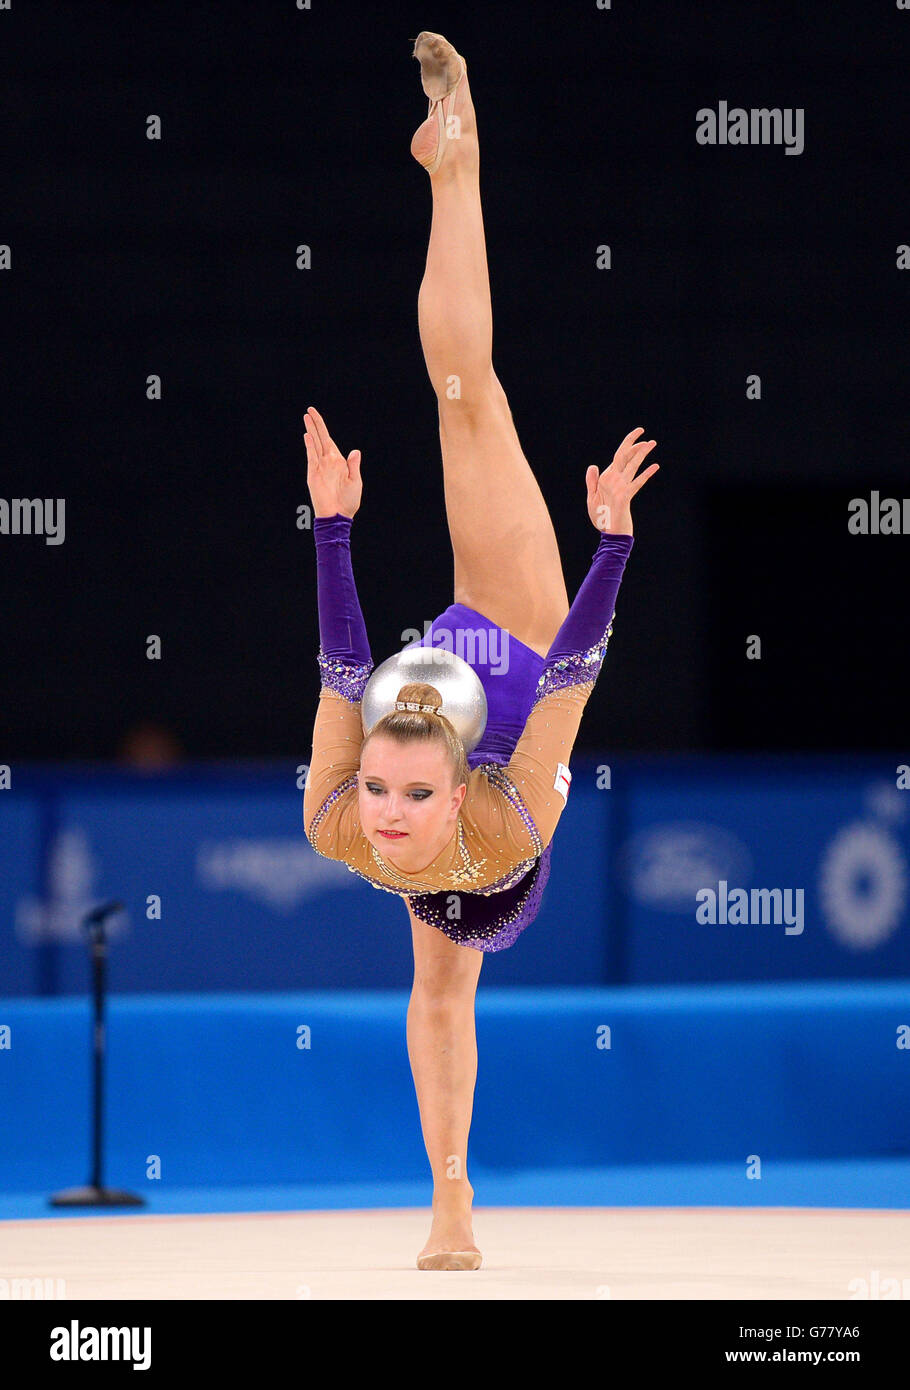 Stephani Sherlock, en Angleterre, participe à la finale de la gymnastique en rythme de l'individu à SSE Hydro lors des Jeux du Commonwealth de 2014 à Glasgow. Banque D'Images